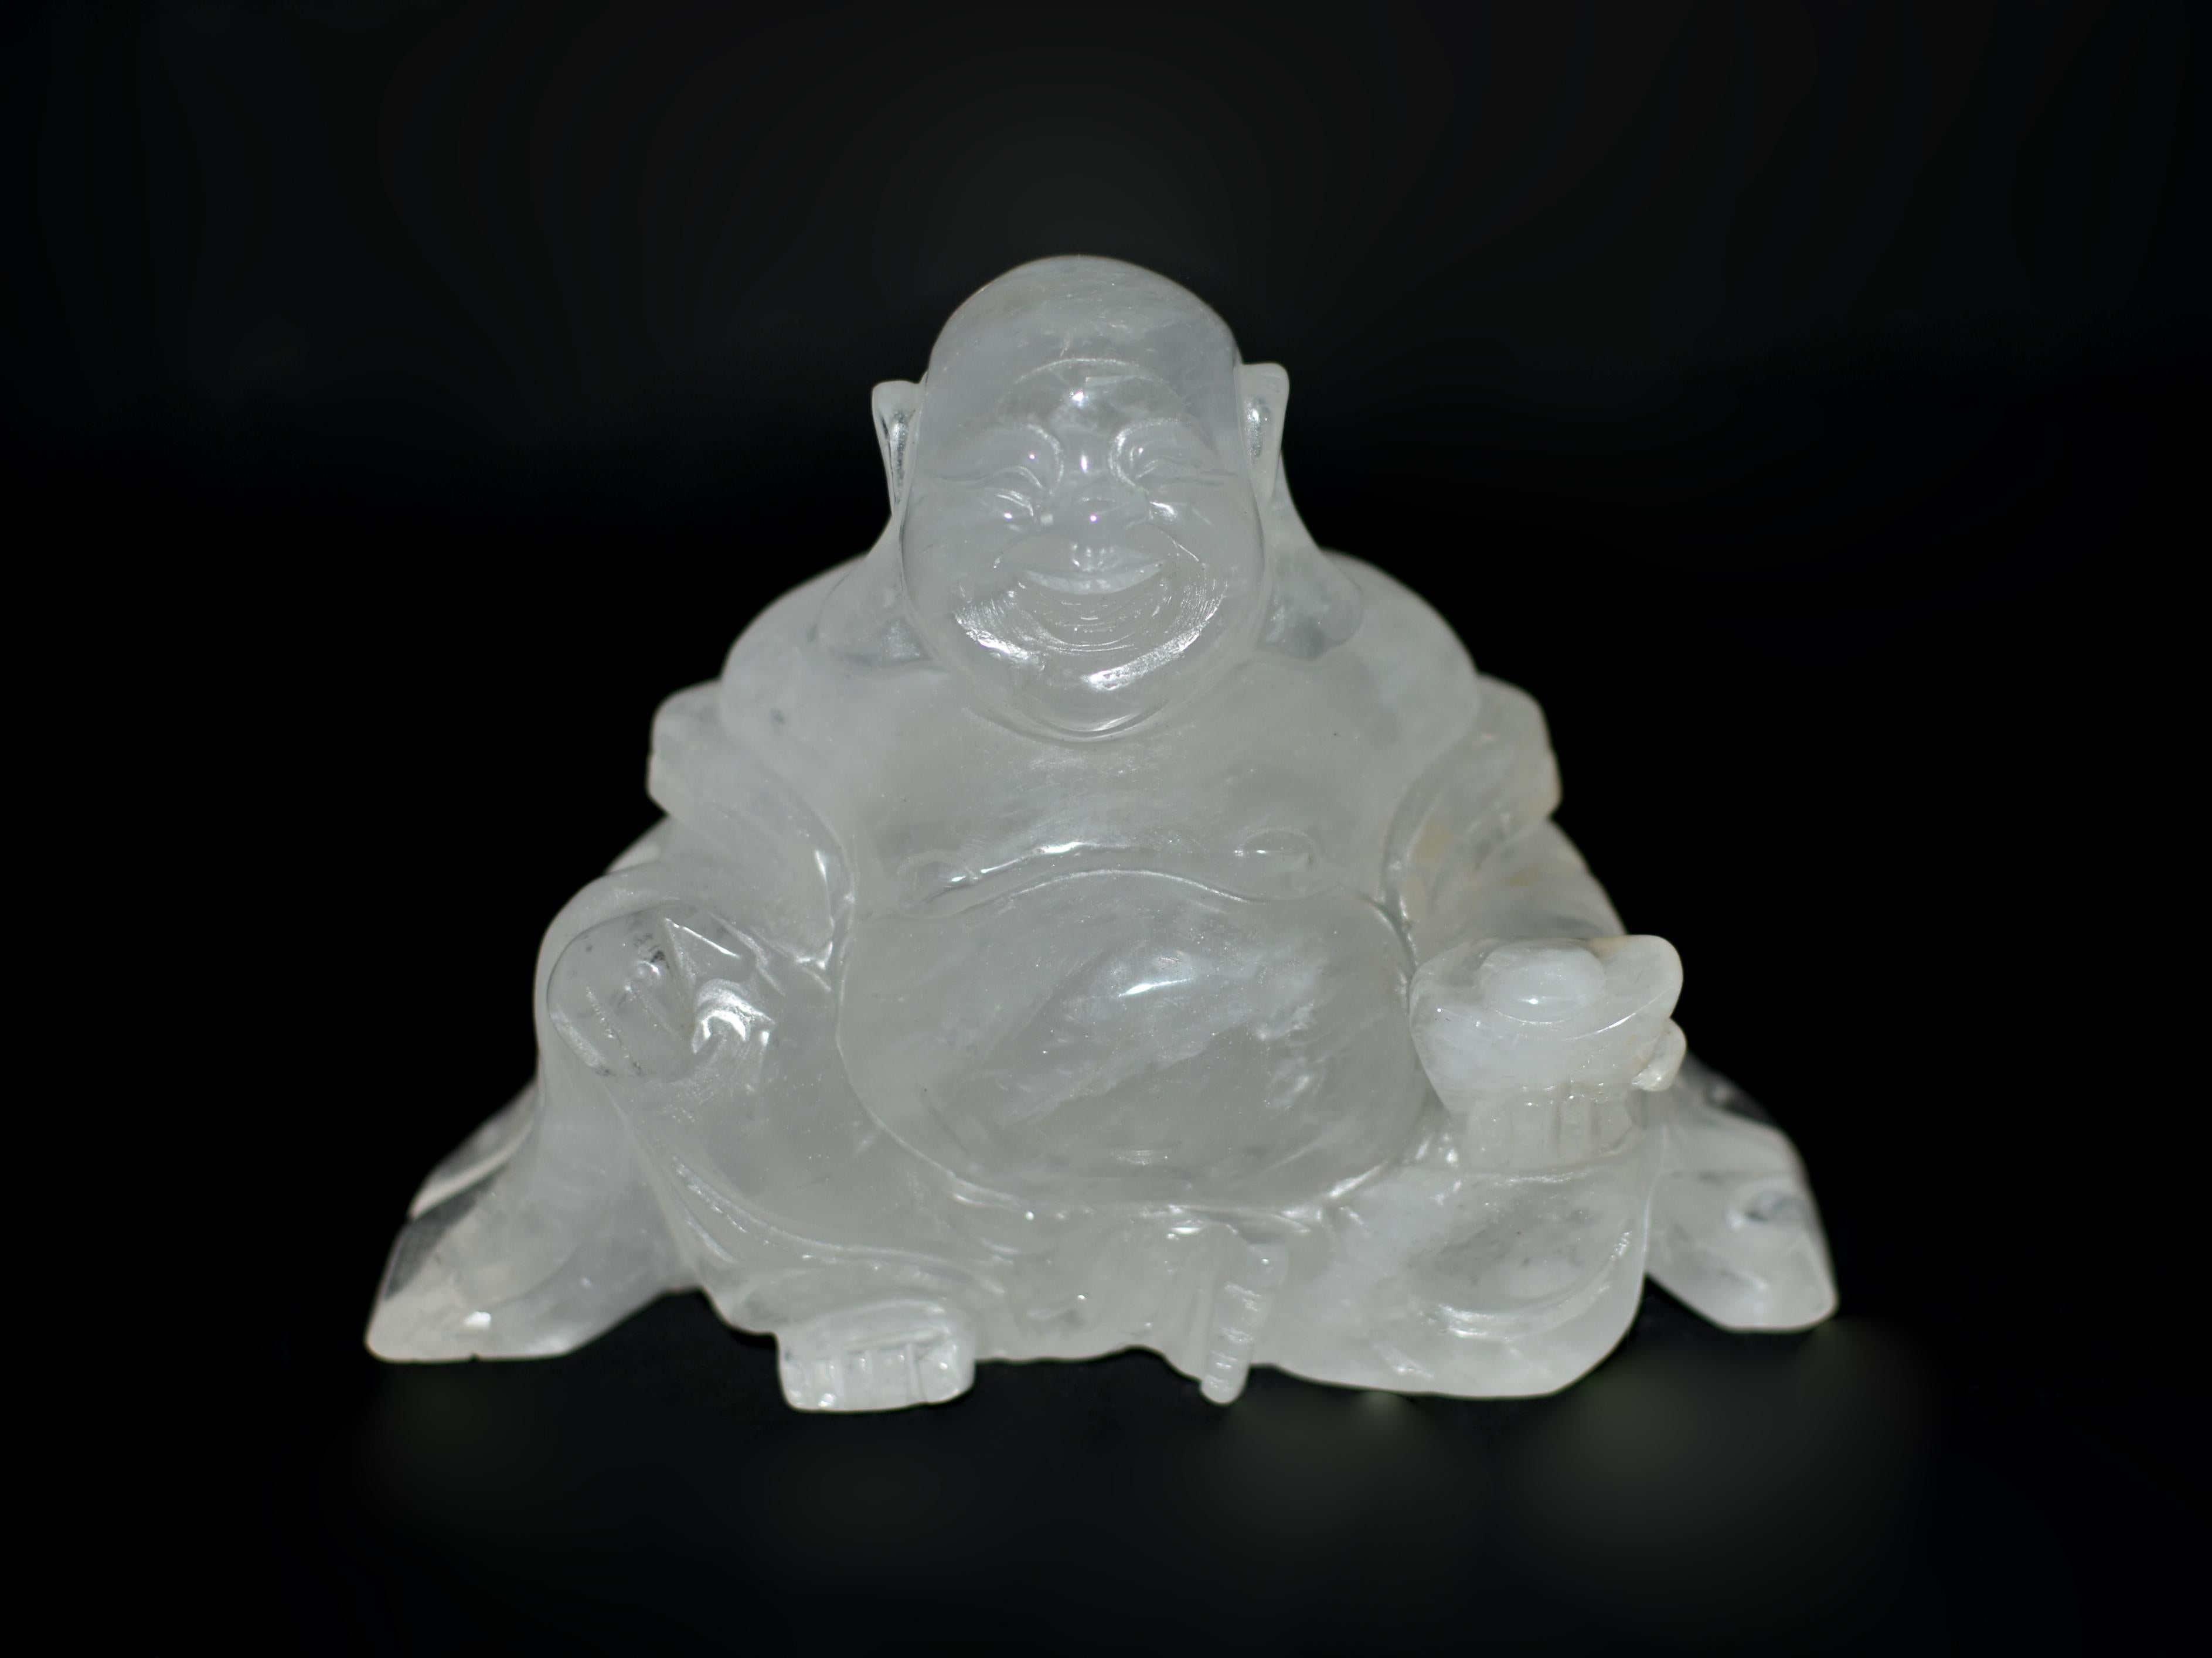 Ein kostbarer Quarz Happy Buddha, handgeschnitzt aus einem massiven Block aus natürlichem Bergkristall feinster Qualität. Das lockere Gewand des Buddha, der in heiterer Ruhe sitzt, legt sich anmutig um seinen Oberkörper und fällt sanft um seine Arme